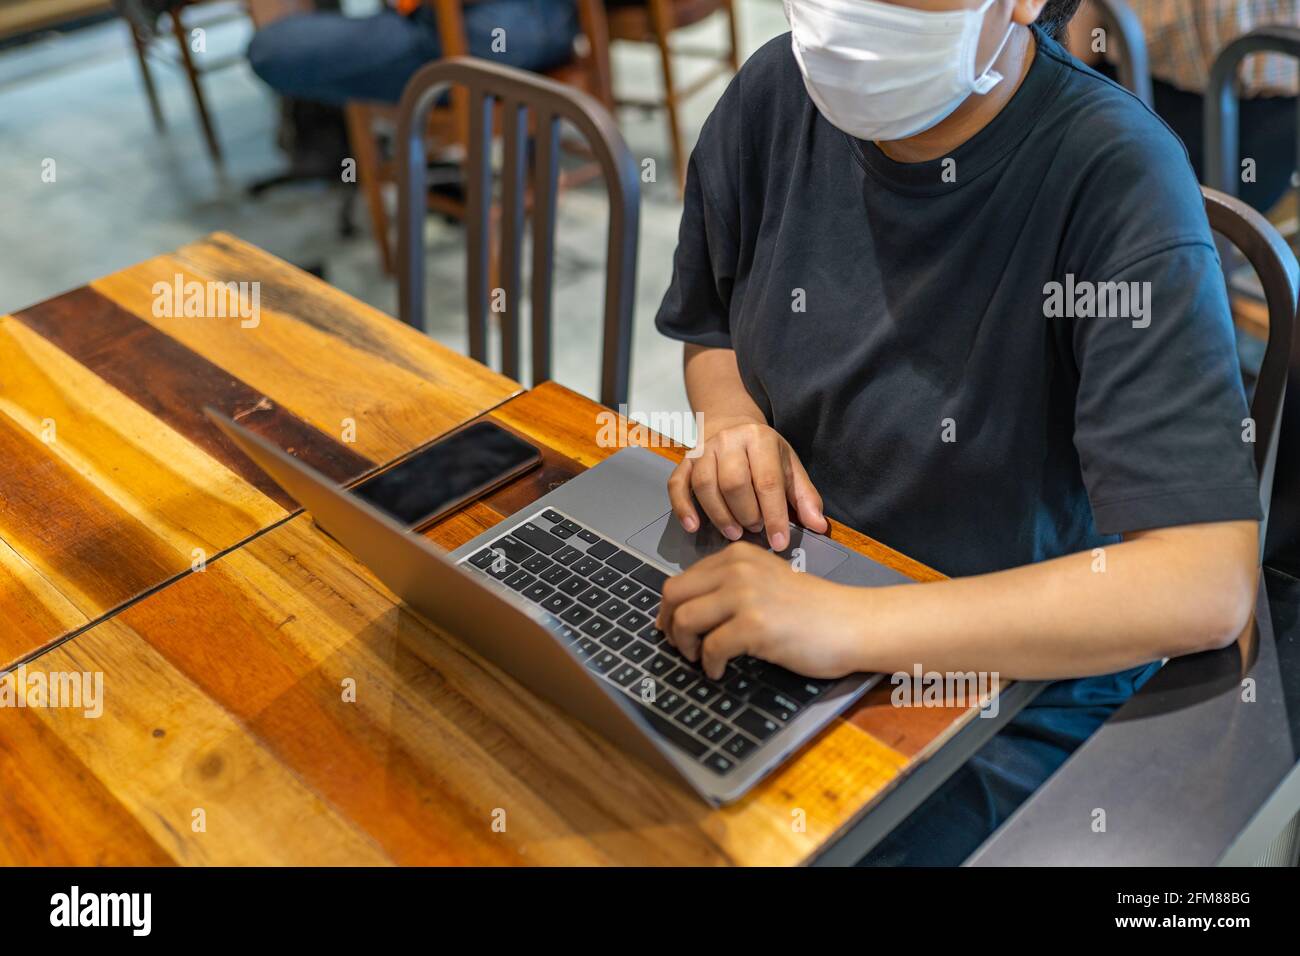 Femme portant un masque de protection et utilisant un ordinateur portable à la cafétéria Banque D'Images